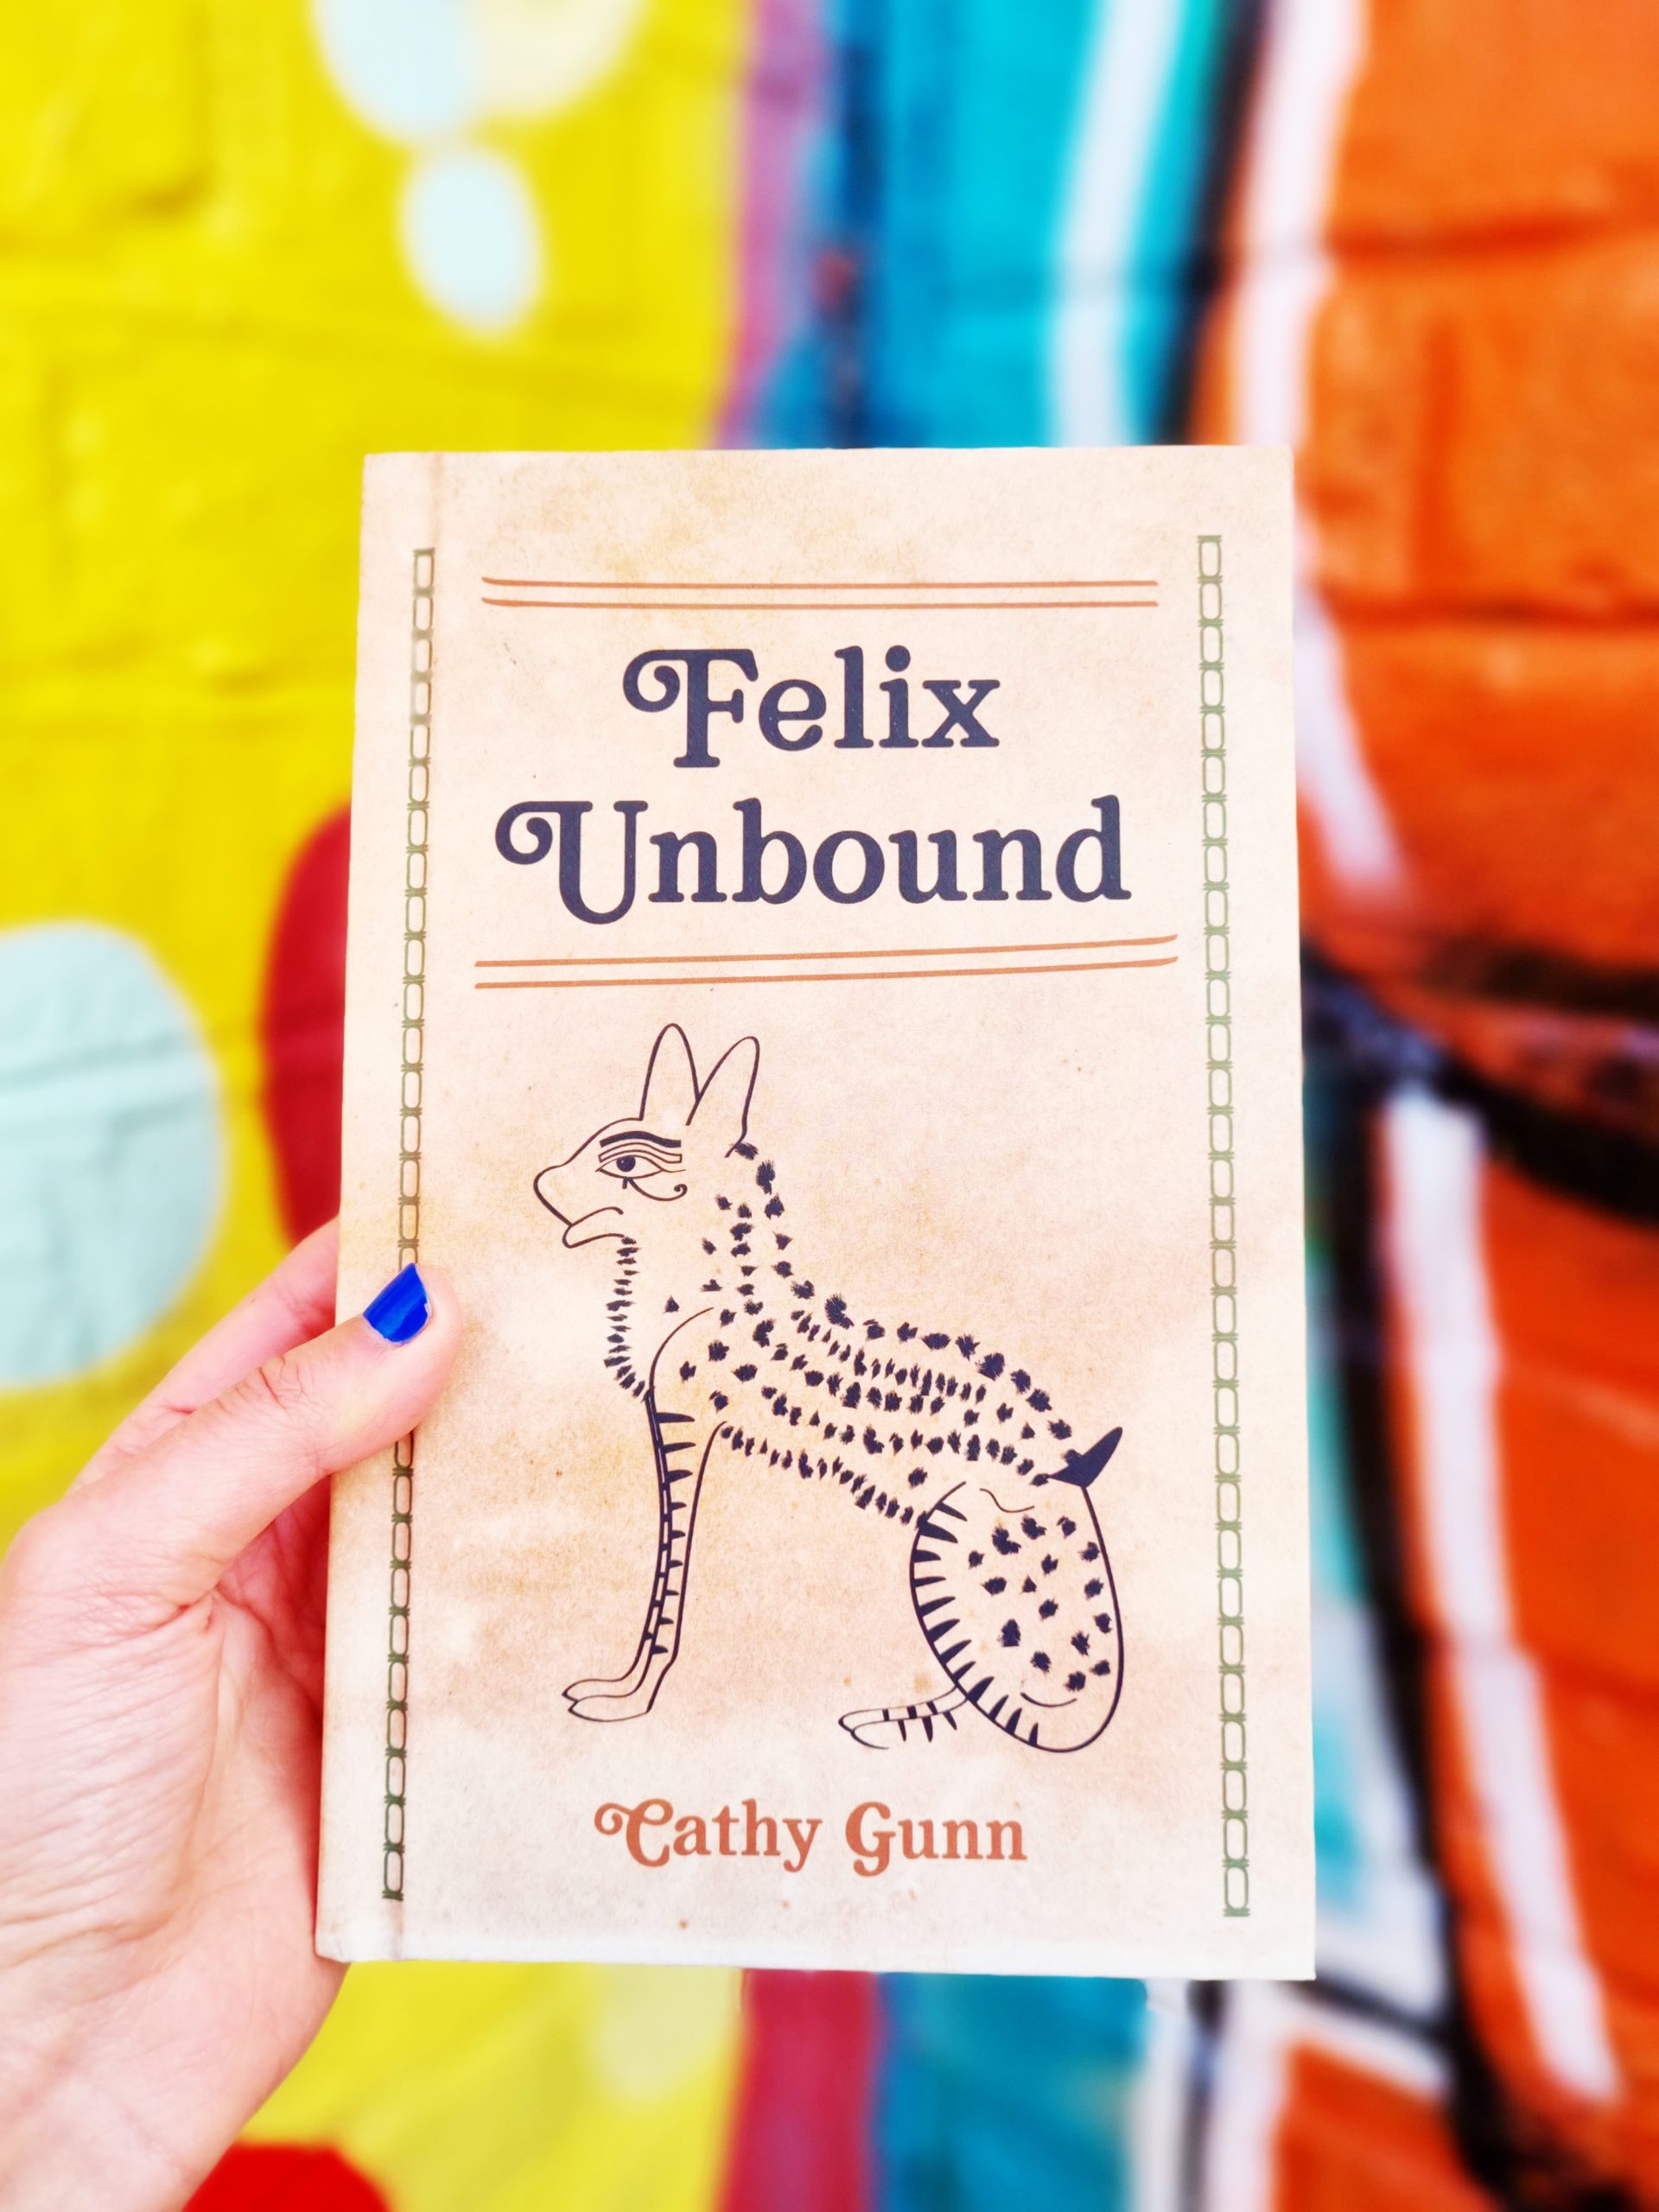 <img src="felix.jpg" alt="felix unbound romance mystery novel"/>